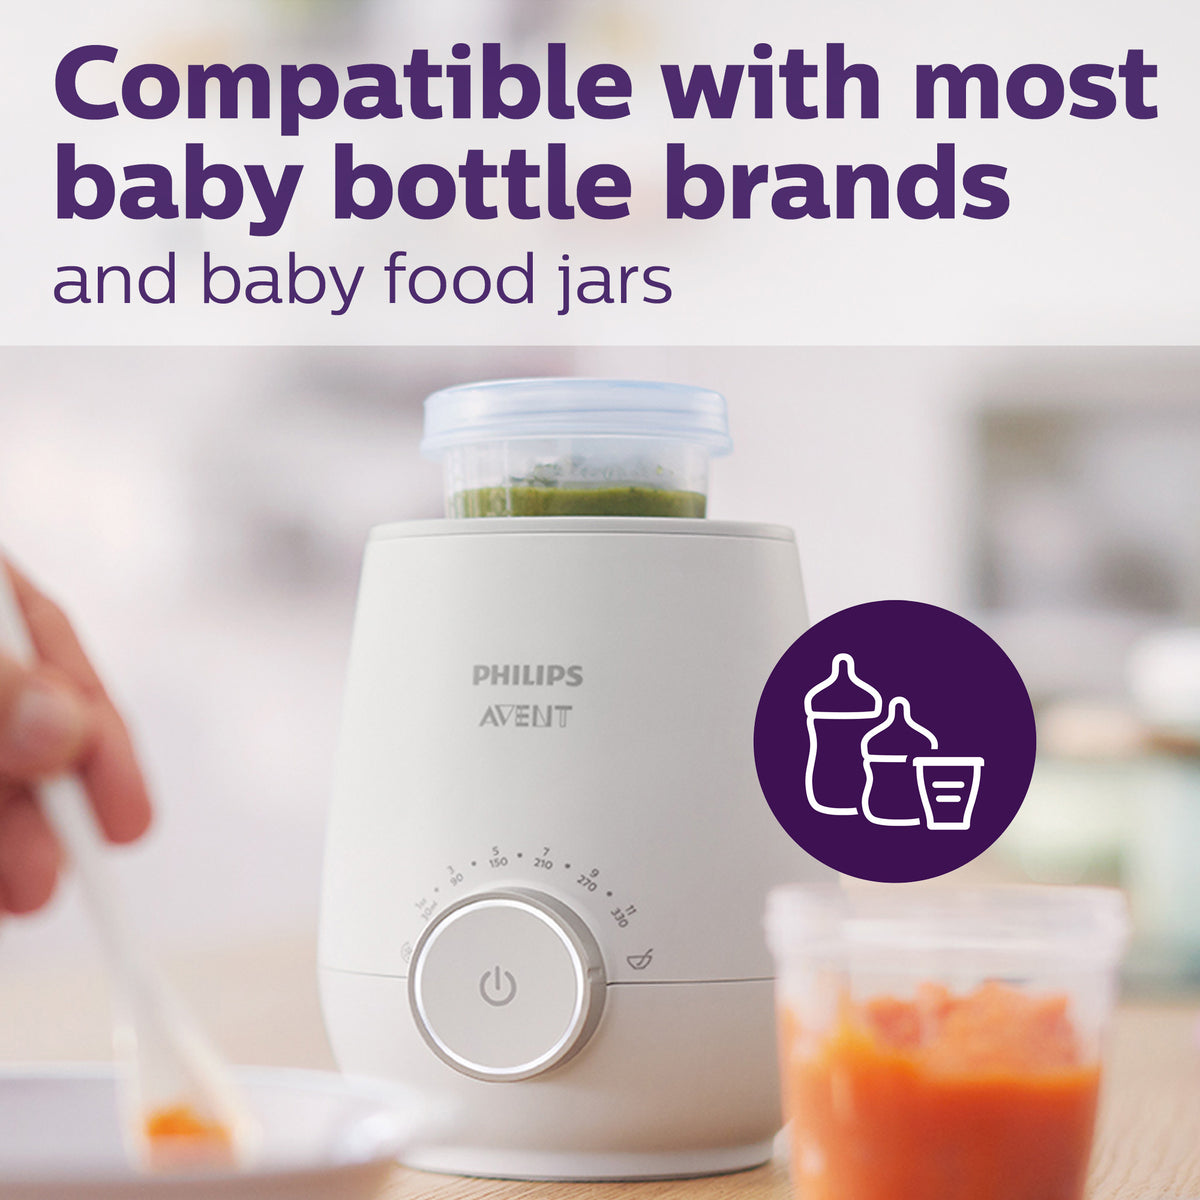 Philips Avent Chauffe-biberon - Chauffe en 3 minutes - Dégivrage silencieux  - Maintient le lait au chaud - Facile à utiliser - Compatible avec tous